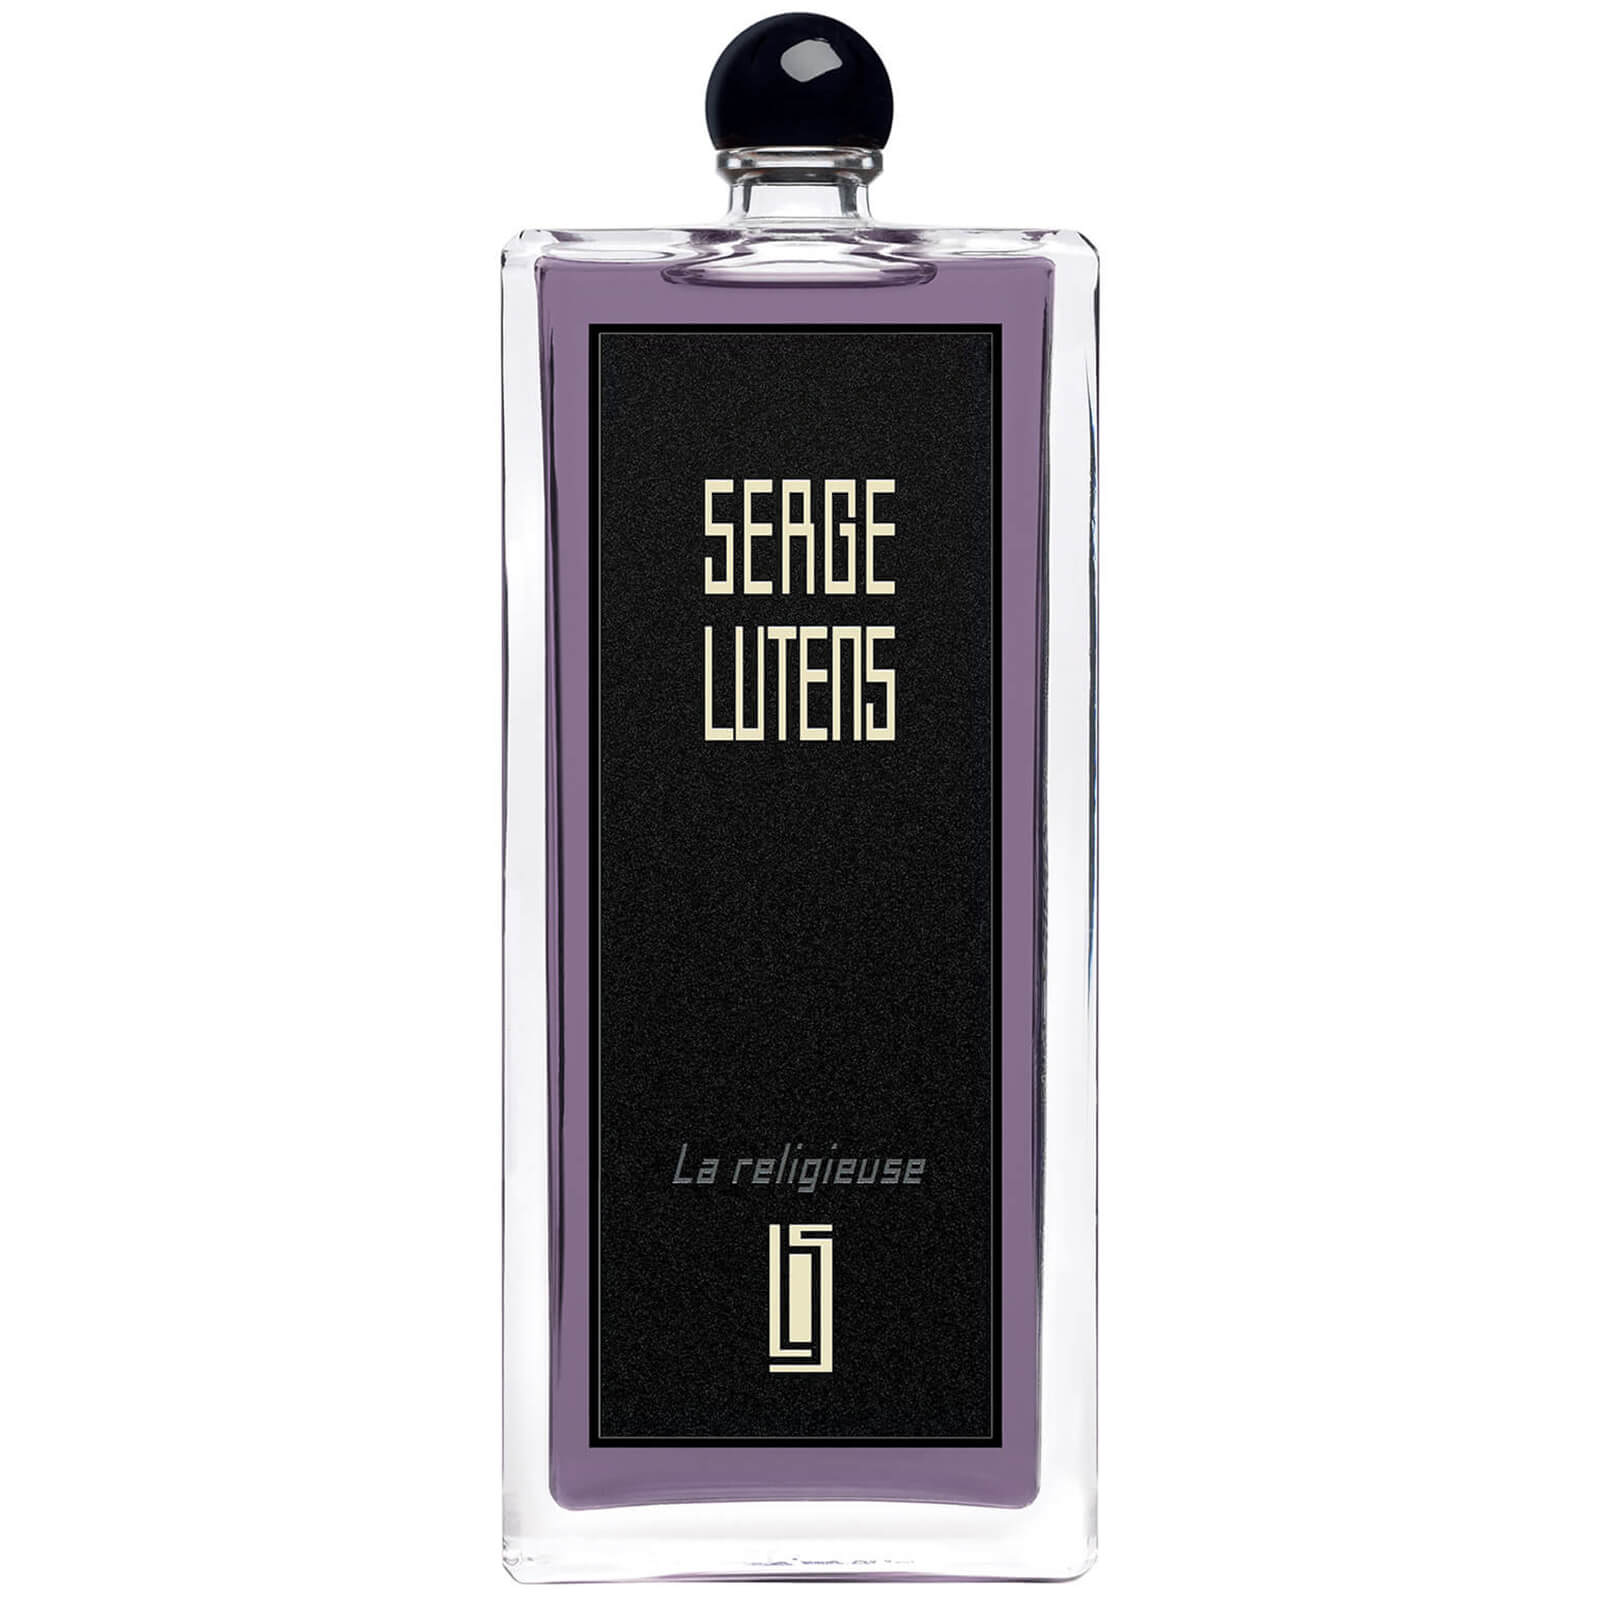 Photos - Women's Fragrance Serge Lutens La Religieuse Eau de Parfum - 100ml 36112367155 